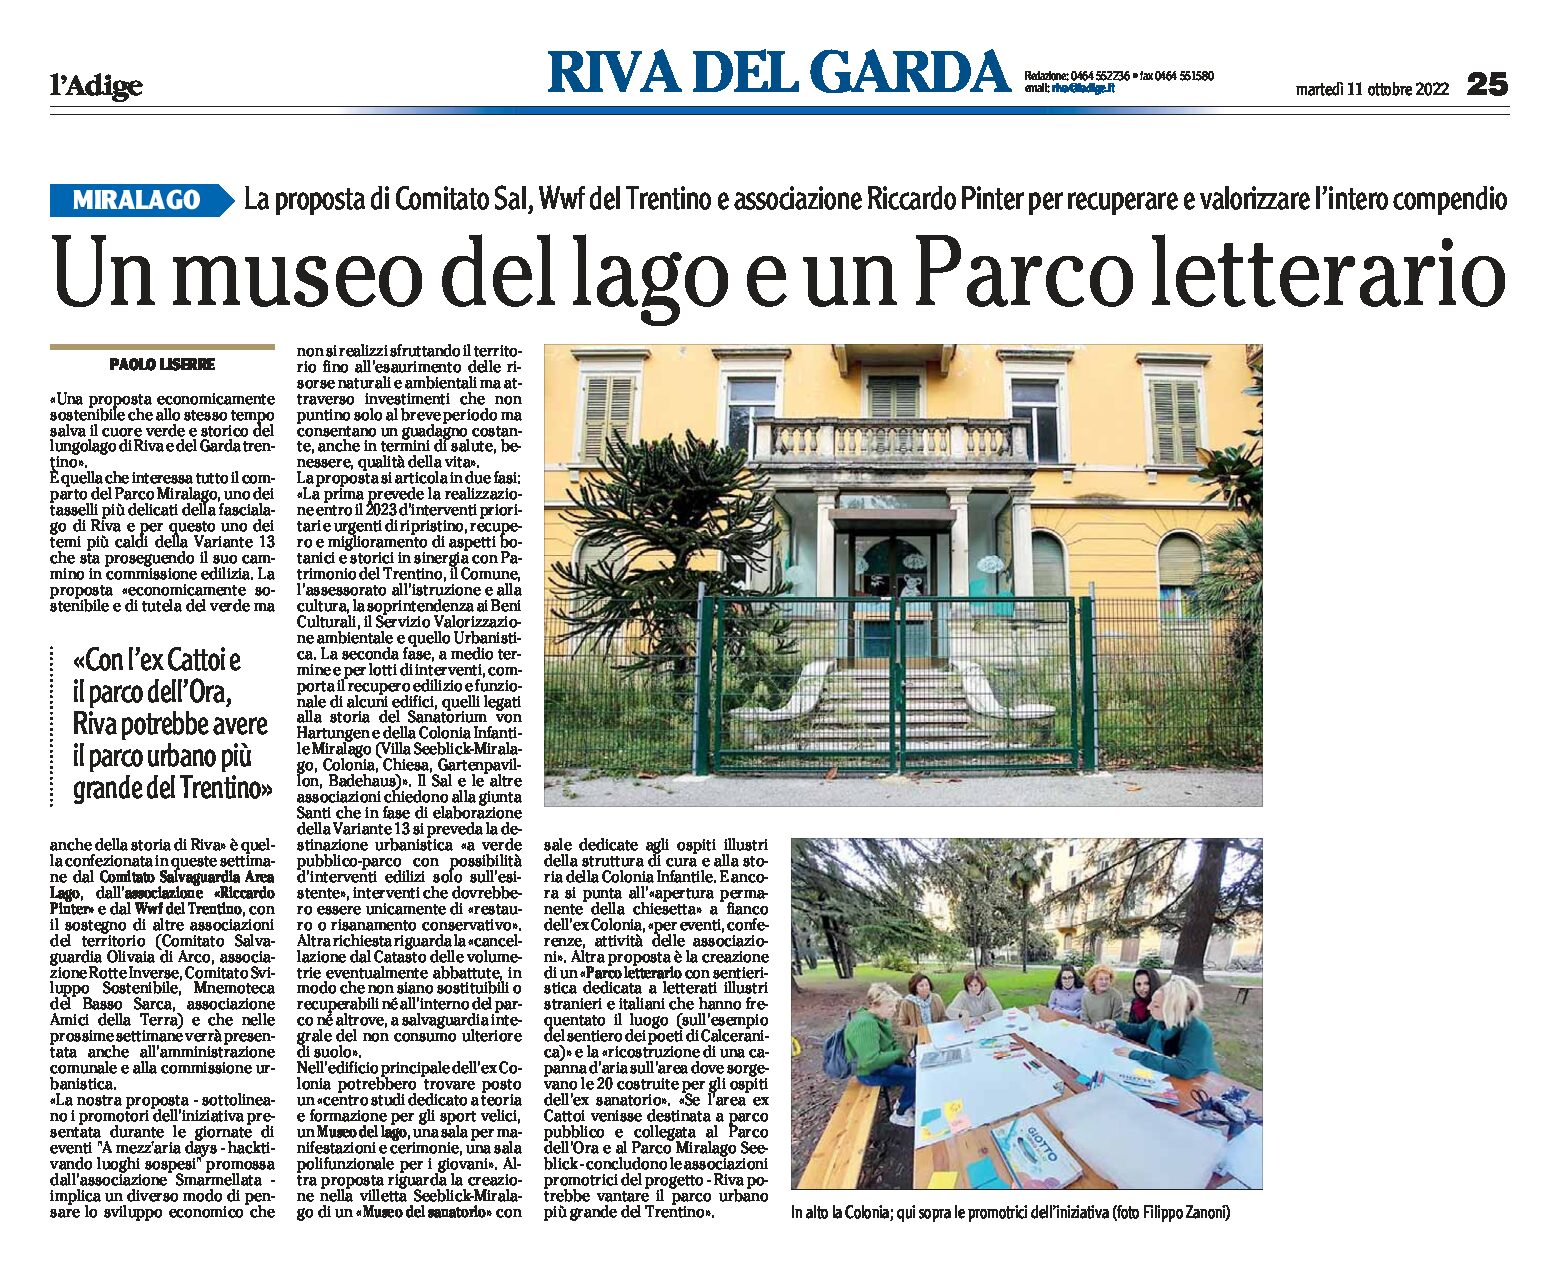 Riva, Miralago: un museo del lago e un Parco letterario